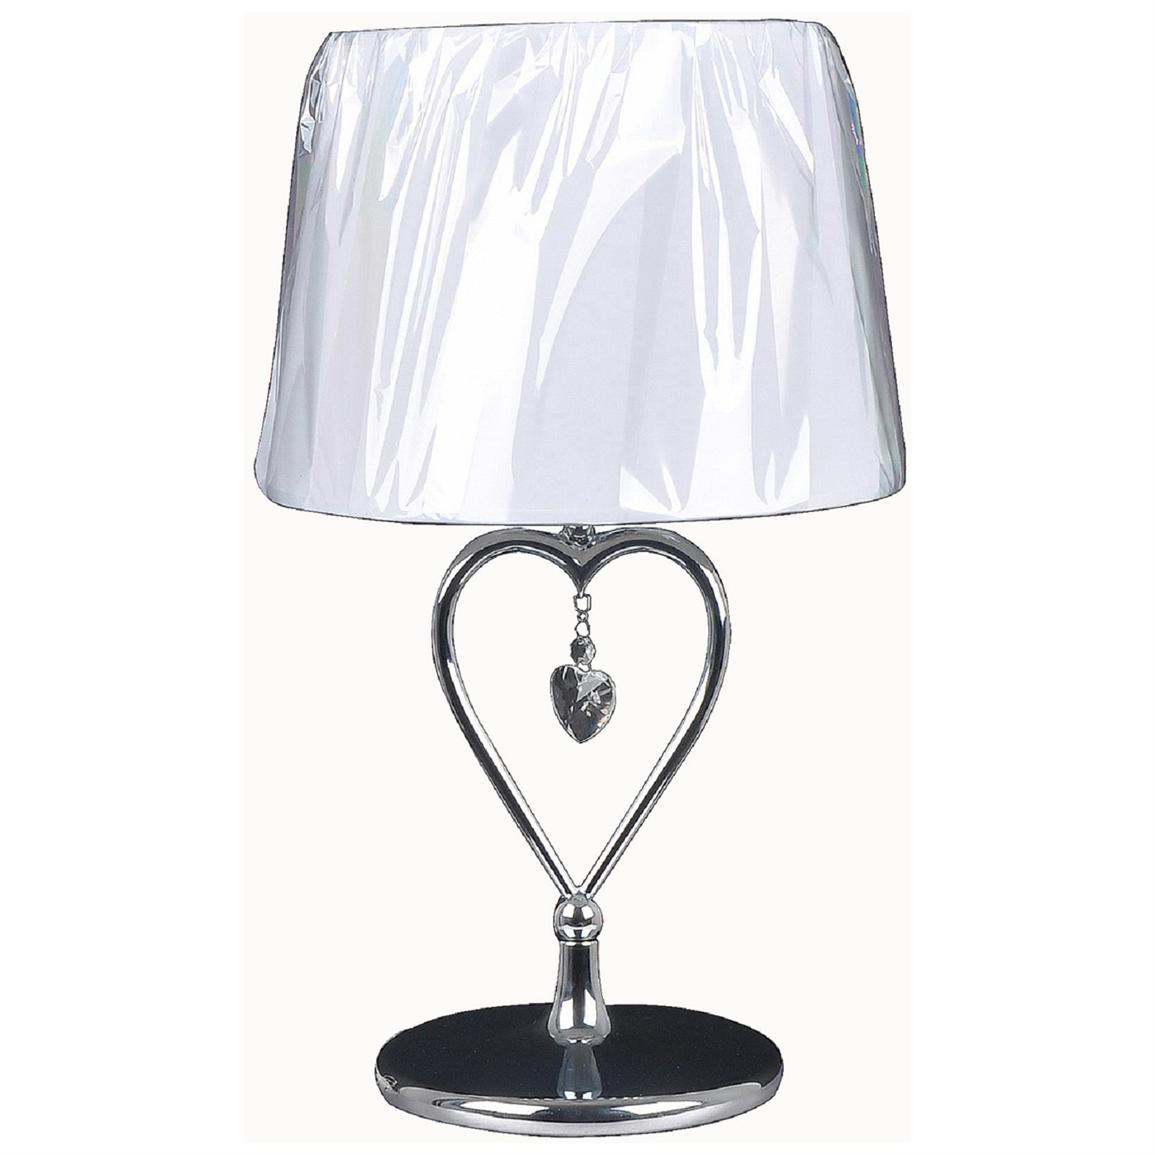 Elegant Designs Chrome Heart Table Lamp 421564 Lighting At